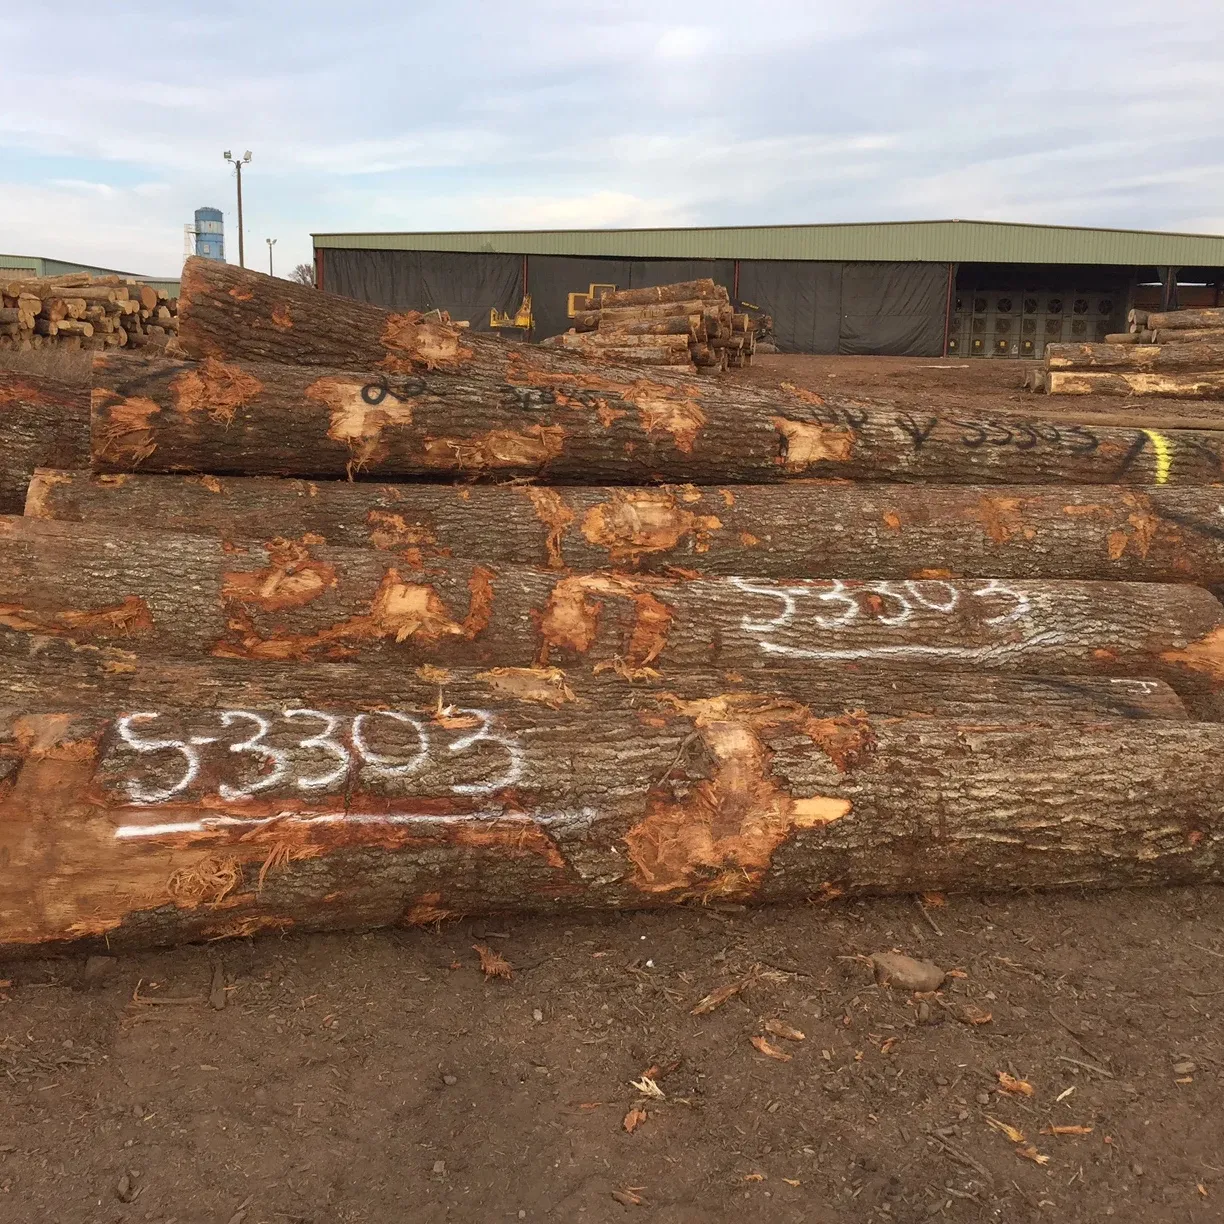 Migliore vendita di alta qualità europa quercia rossa/legname di tronchi con il miglior aspetto-direttamente dal produttore a prezzo negoziabile